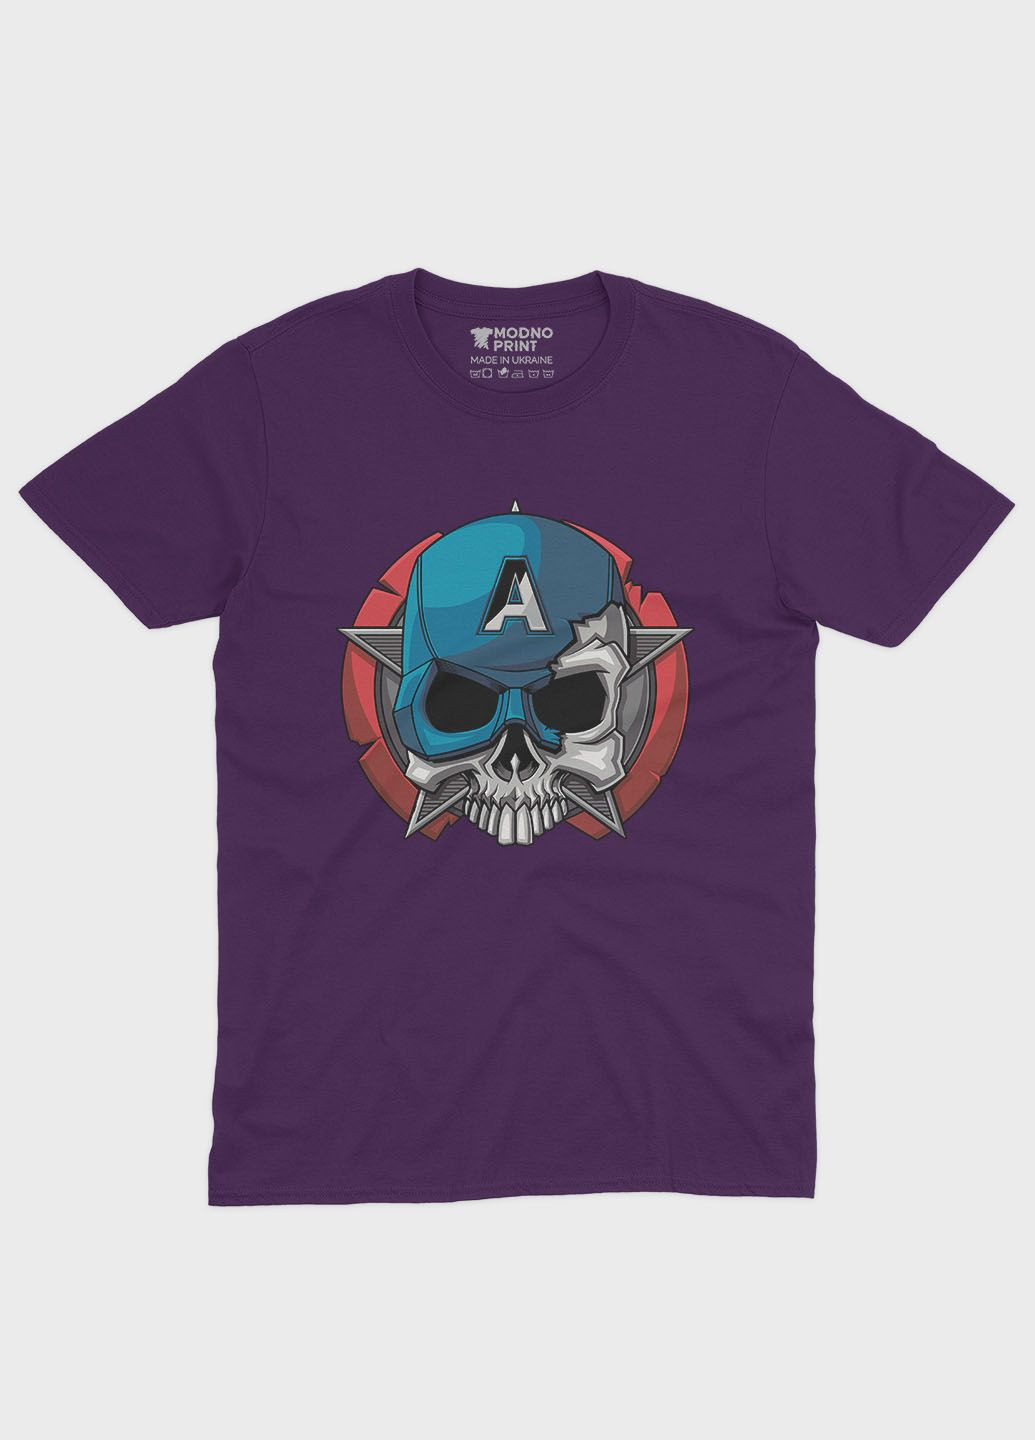 Фіолетова демісезонна футболка для хлопчика з принтом супергероя - капітан америка (ts001-1-dby-006-022-003-b) Modno